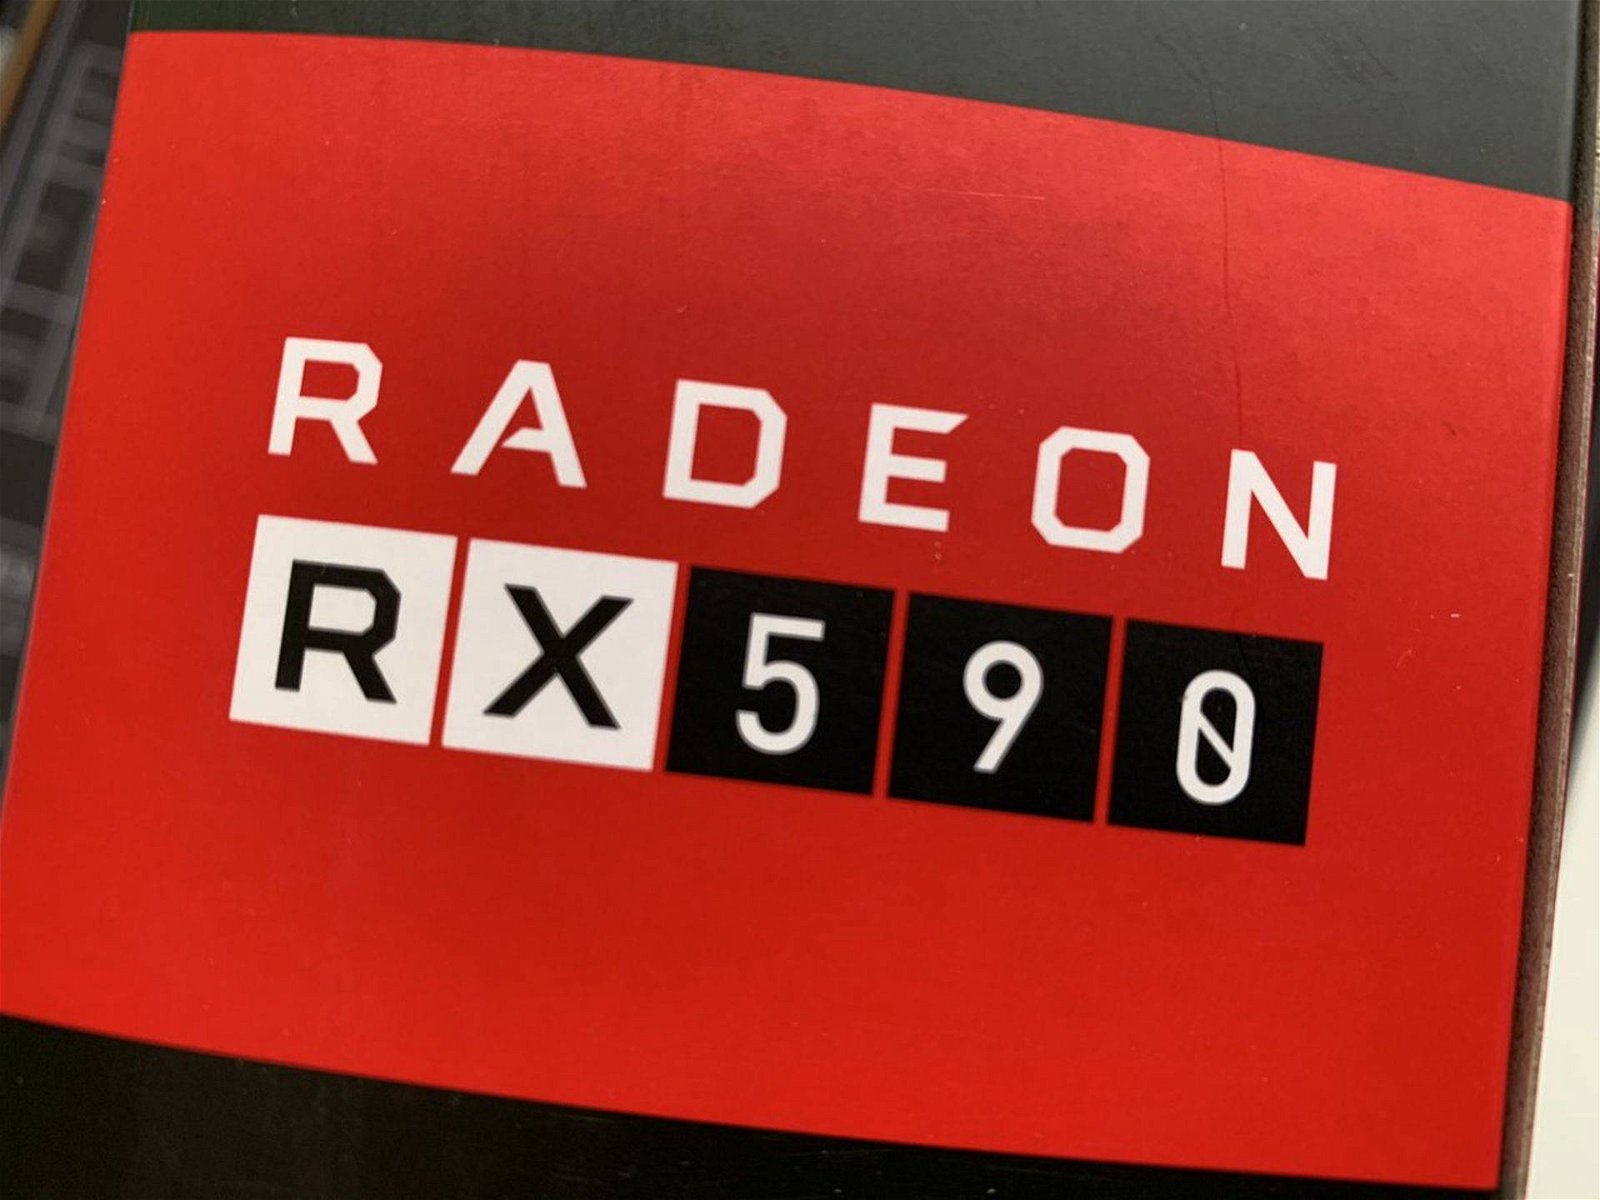 Immagine di Radeon RX 590, la GPU Polaris 30 prodotta da Globalfoundries e Samsung